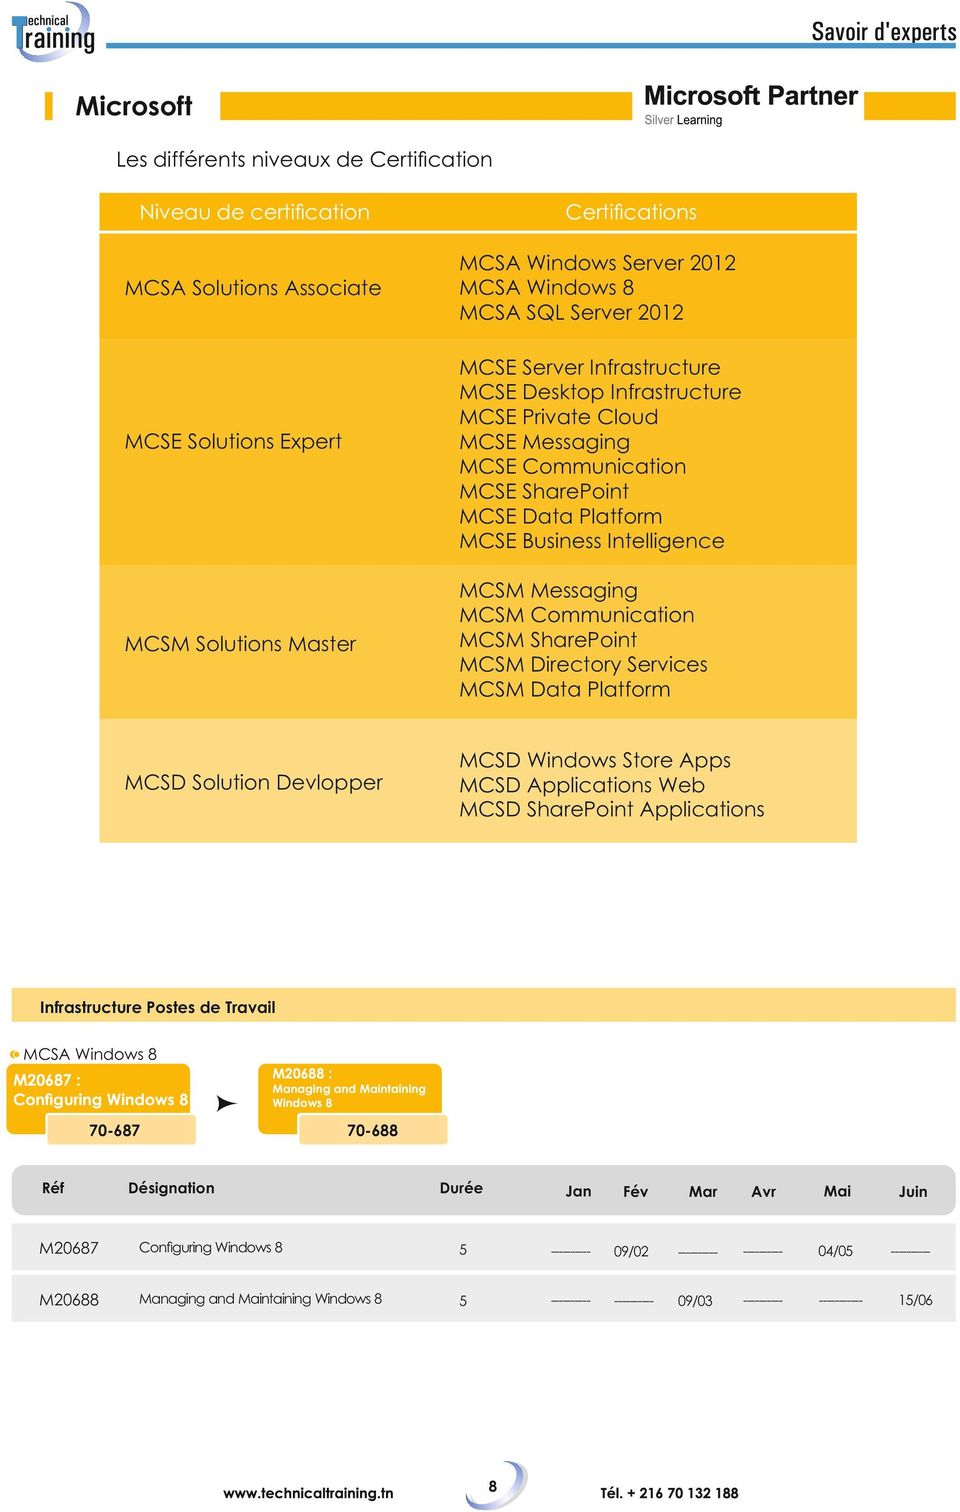 Messaging MCSM Communication MCSM SharePoint MCSM Directory Services MCSM Data Platform MCSD Solution Devlopper MCSD Windows Store Apps MCSD Applications Web MCSD SharePoint Applications